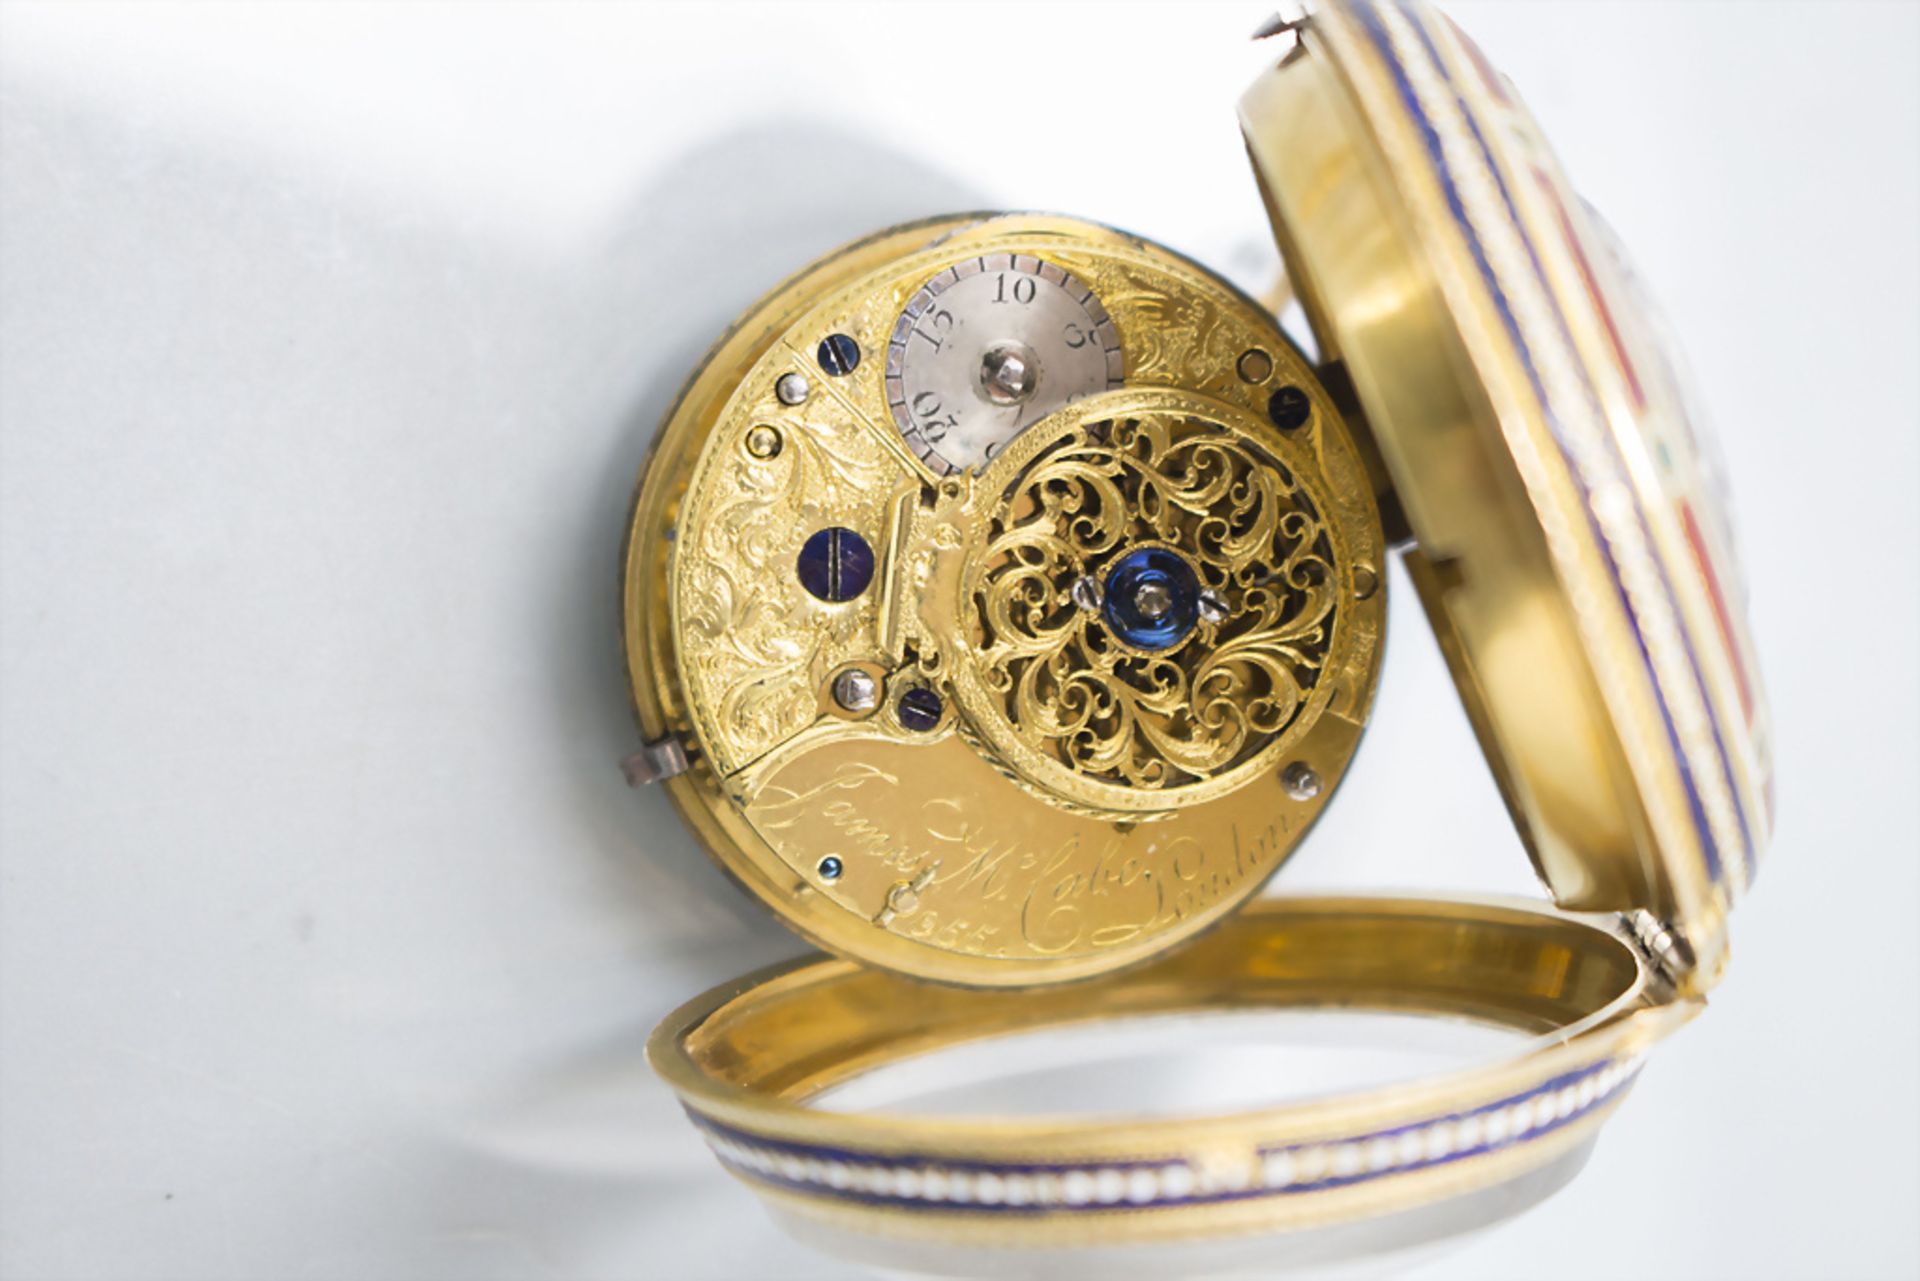 Louis-Seize Taschenuhr mit Email / An 18 ct gold pocket watch, James Mc Cabe, London, um 1777 - Image 5 of 5